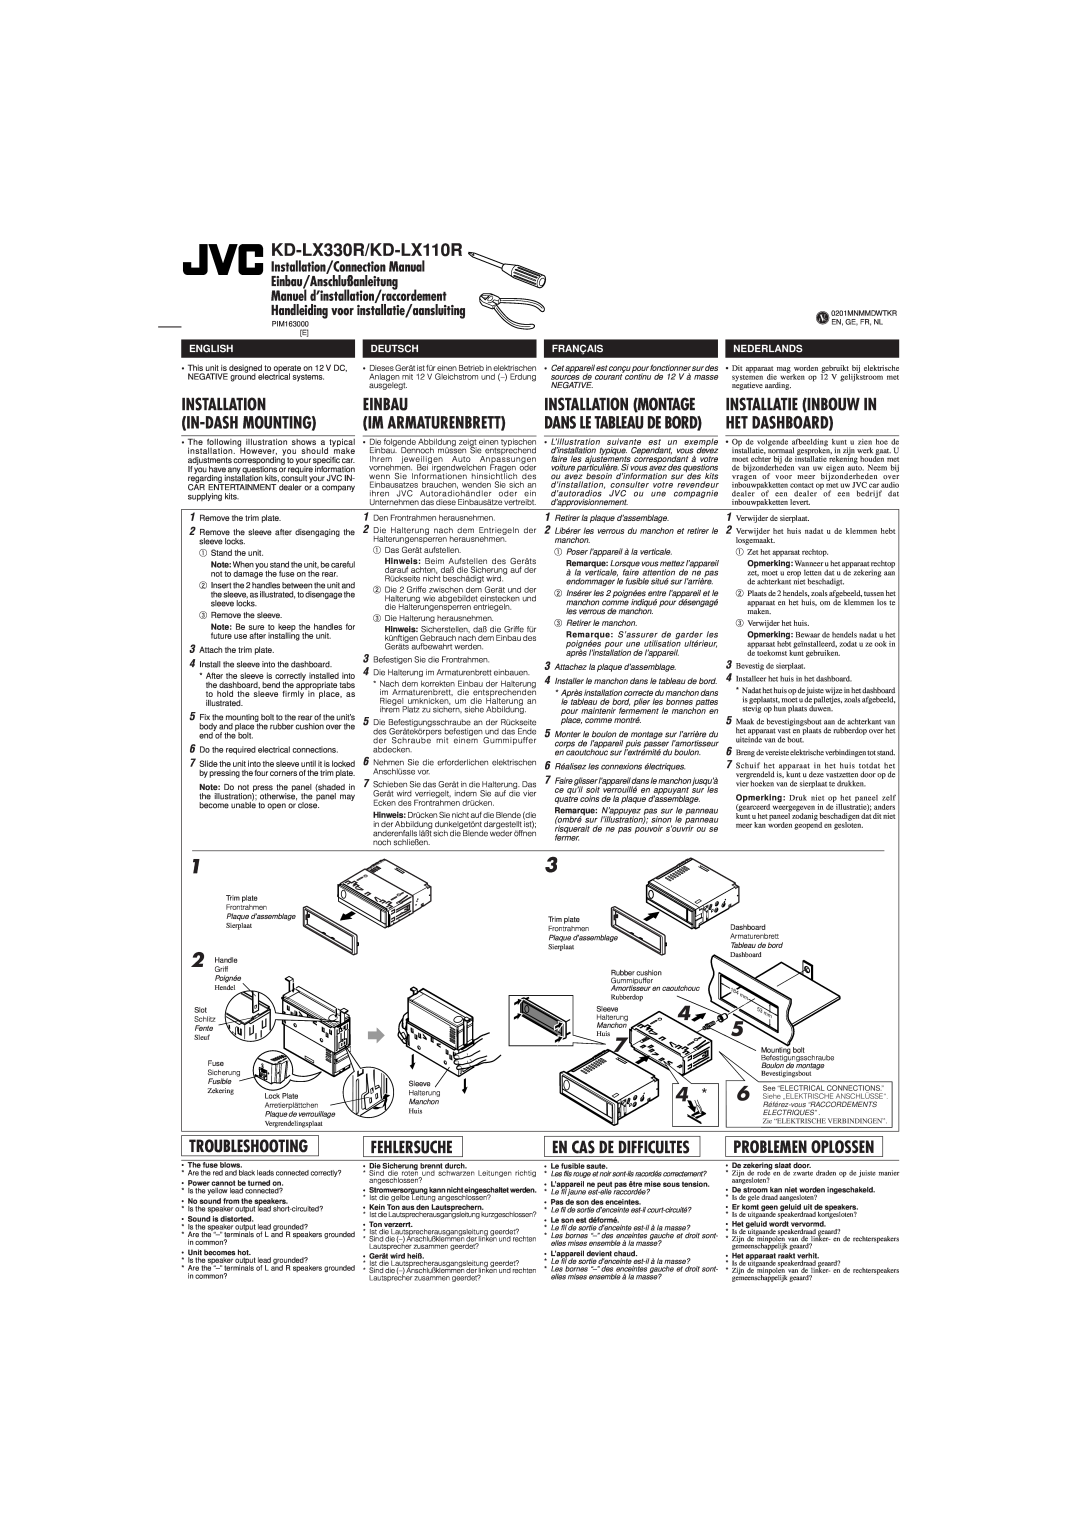 JVC KD-LX330R/KD-LX110R, Installation, Einbau, In-Dashmounting, Het Dashboard, Troubleshooting, Fehlersuche, Deutsch 